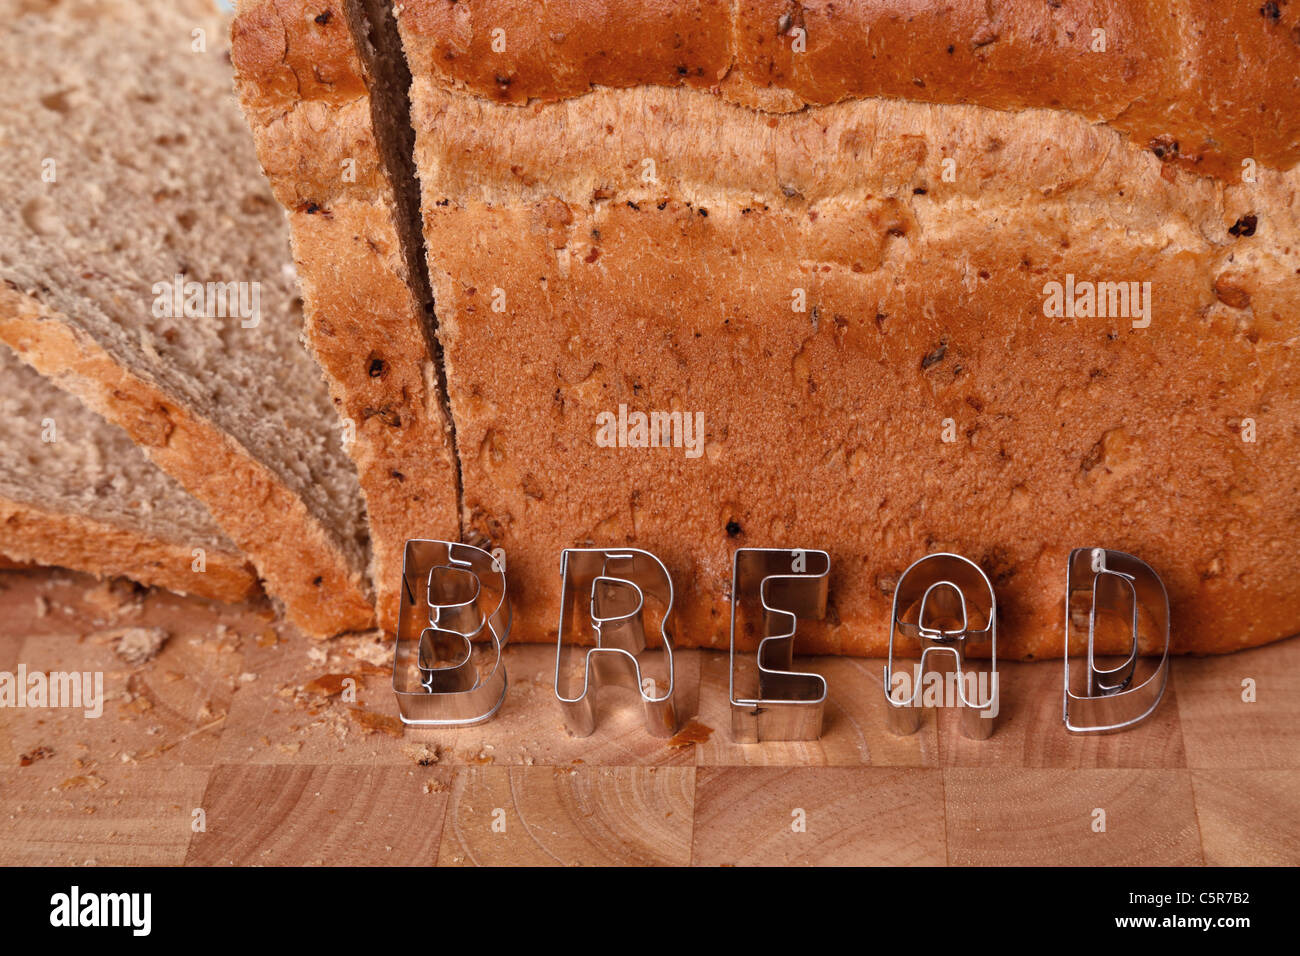 Foto di una pagnotta di pane integrale con la parola in pasticceria in lettere. Foto Stock